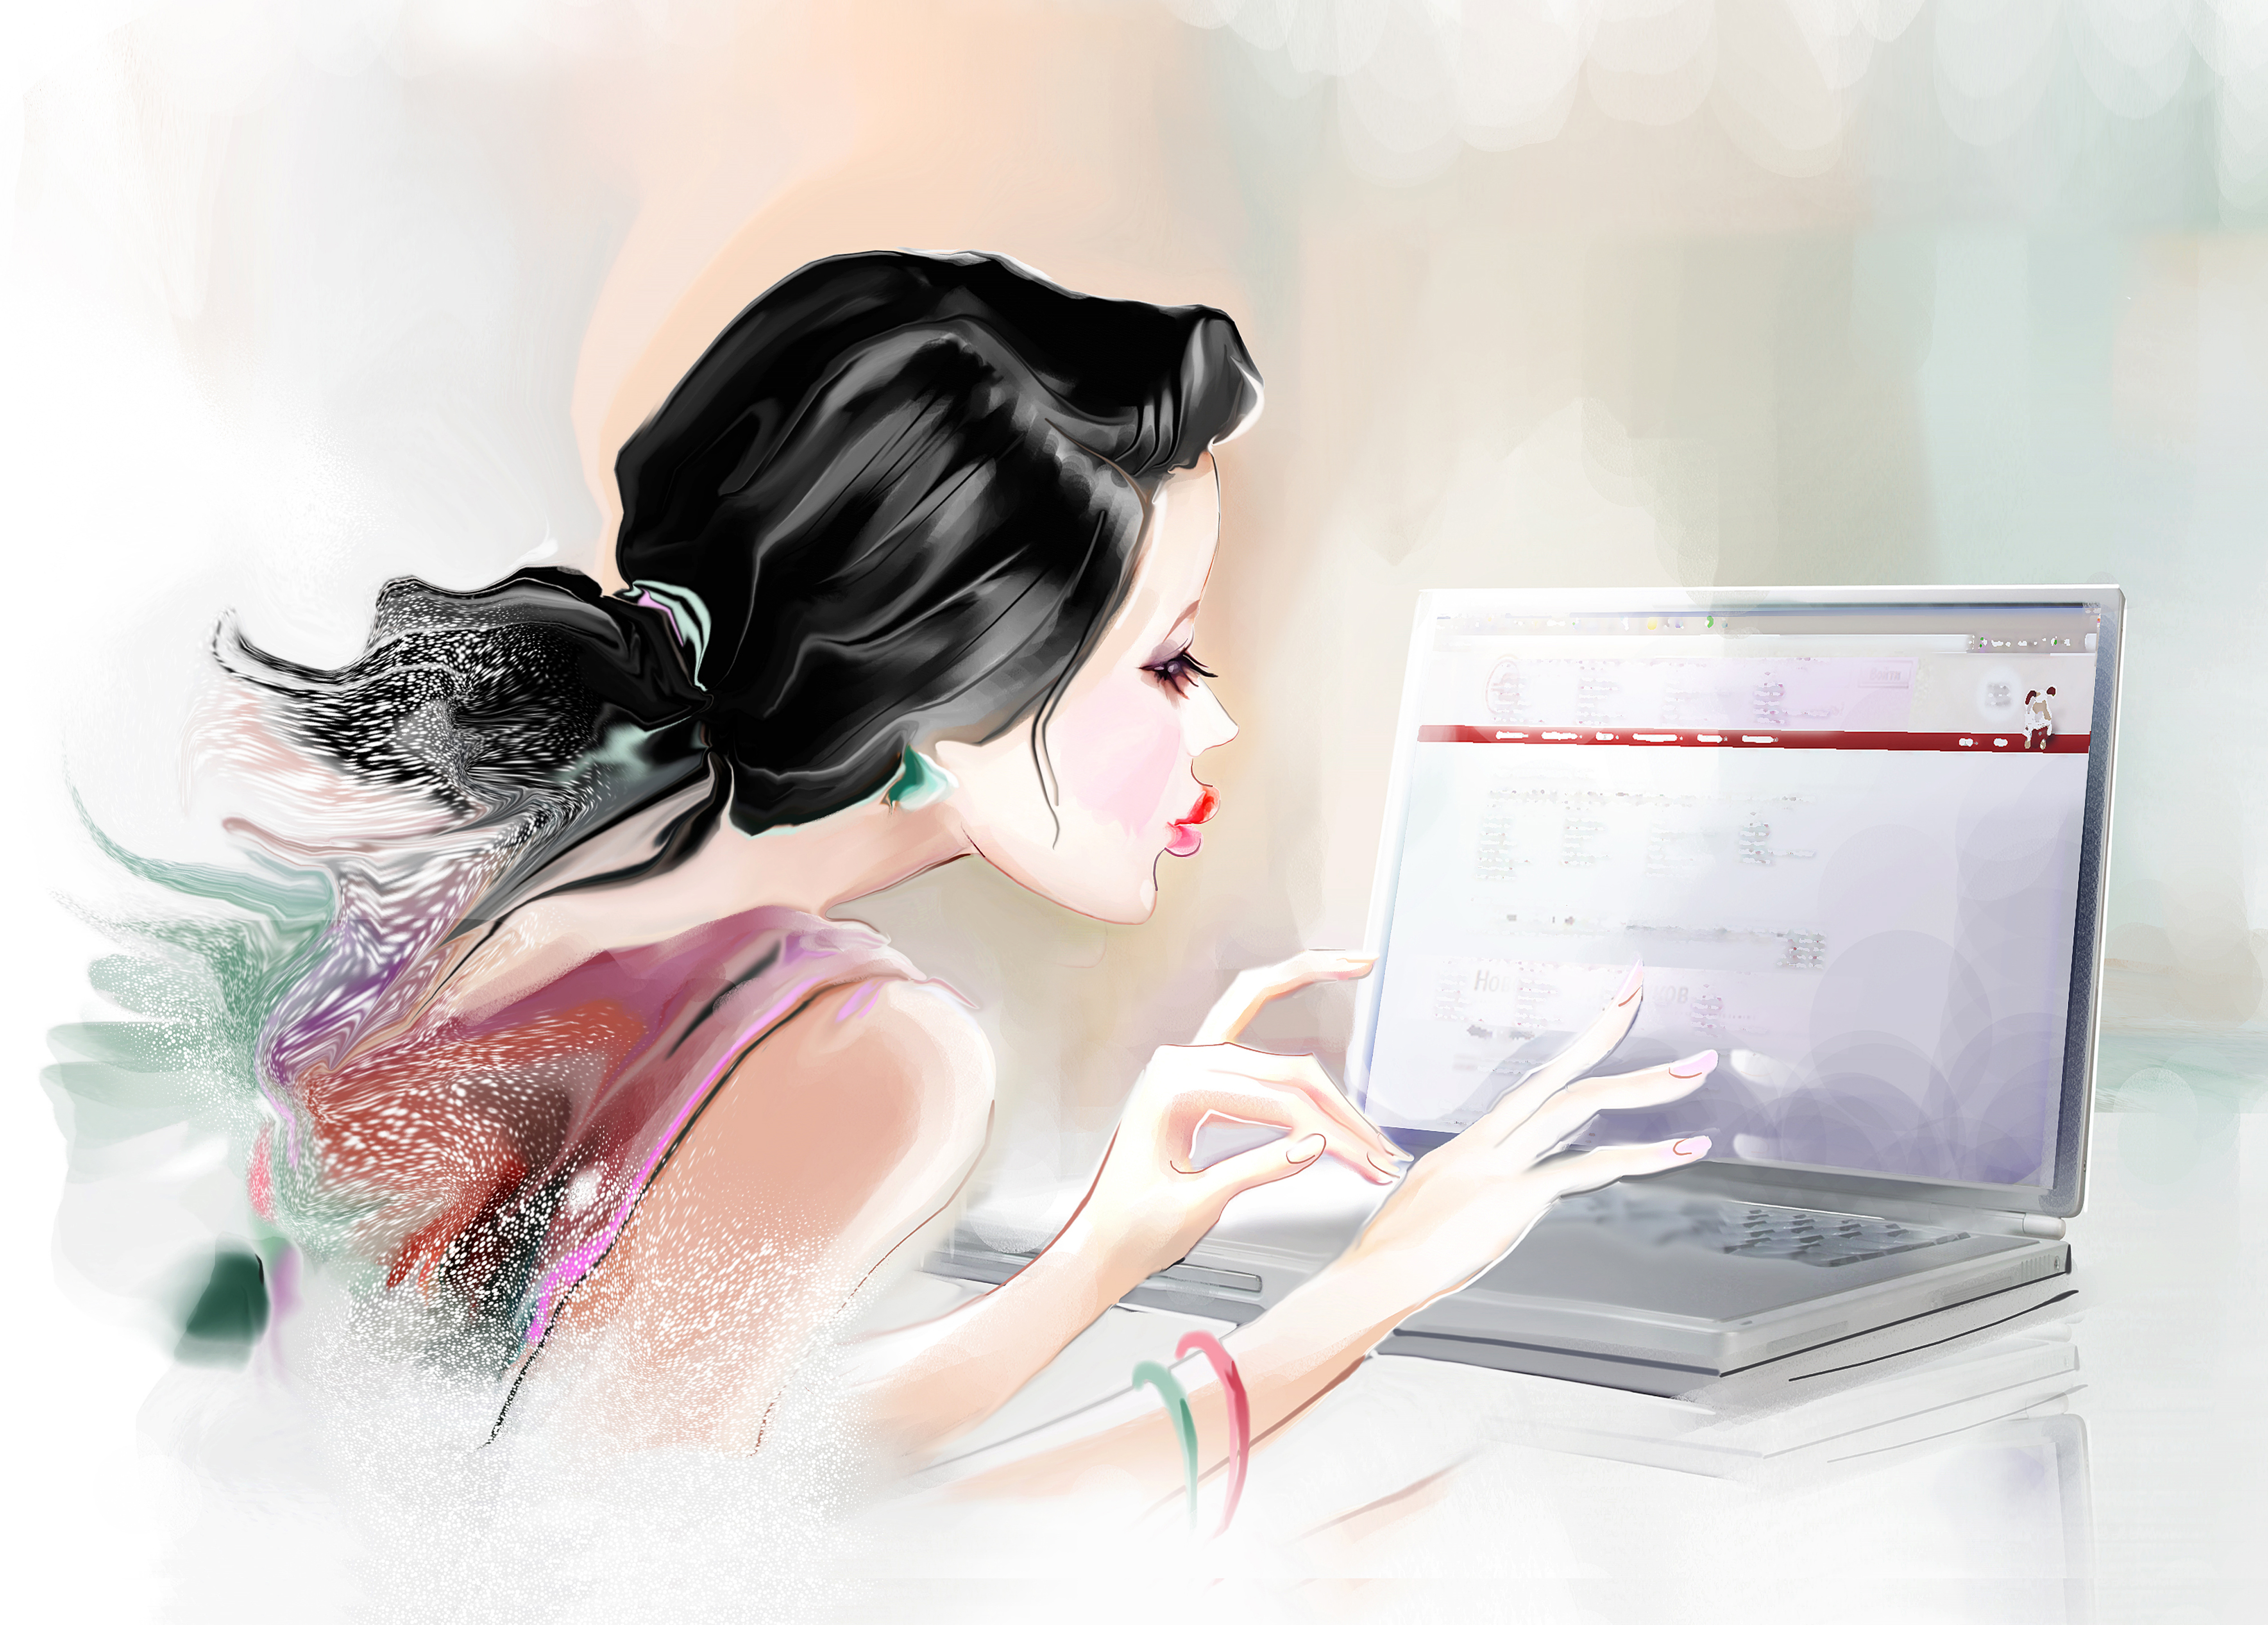 Работа арт. Девушка за компьютером иллюстрация. Девушка с ноутбуком иллюстрация. Рисованная девушка за работой. Девушка с ноутбуком акварель.